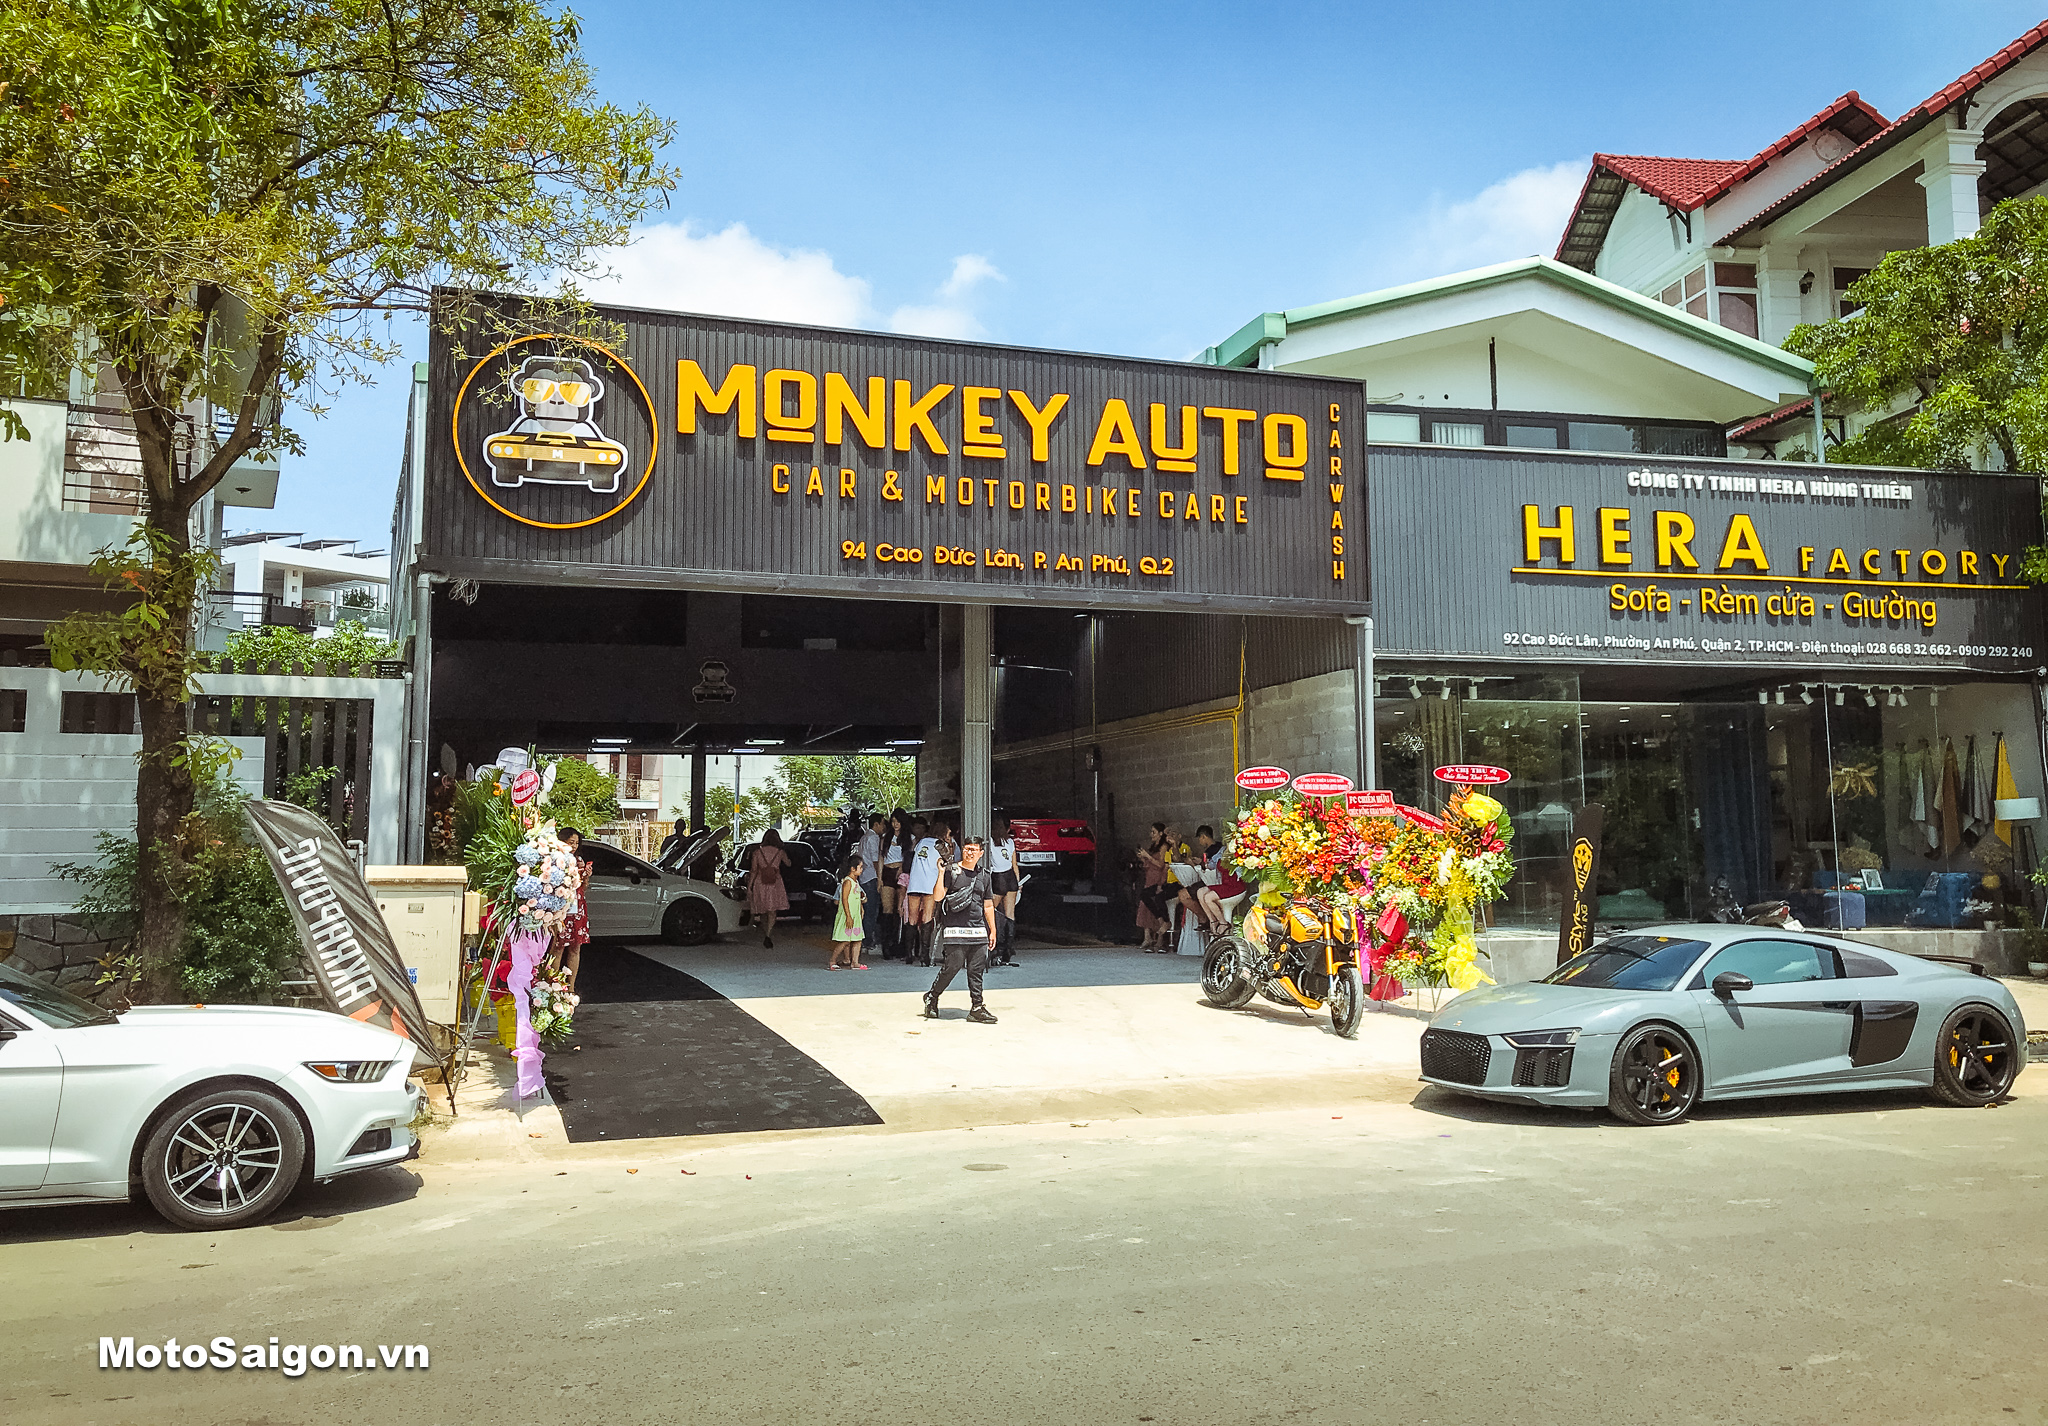 MONKEY AUTO Car & Motorbike Care. Địa chỉ: 94 Cao Đức Lân, Phường An Phú, Quận 2, TPHCM. 